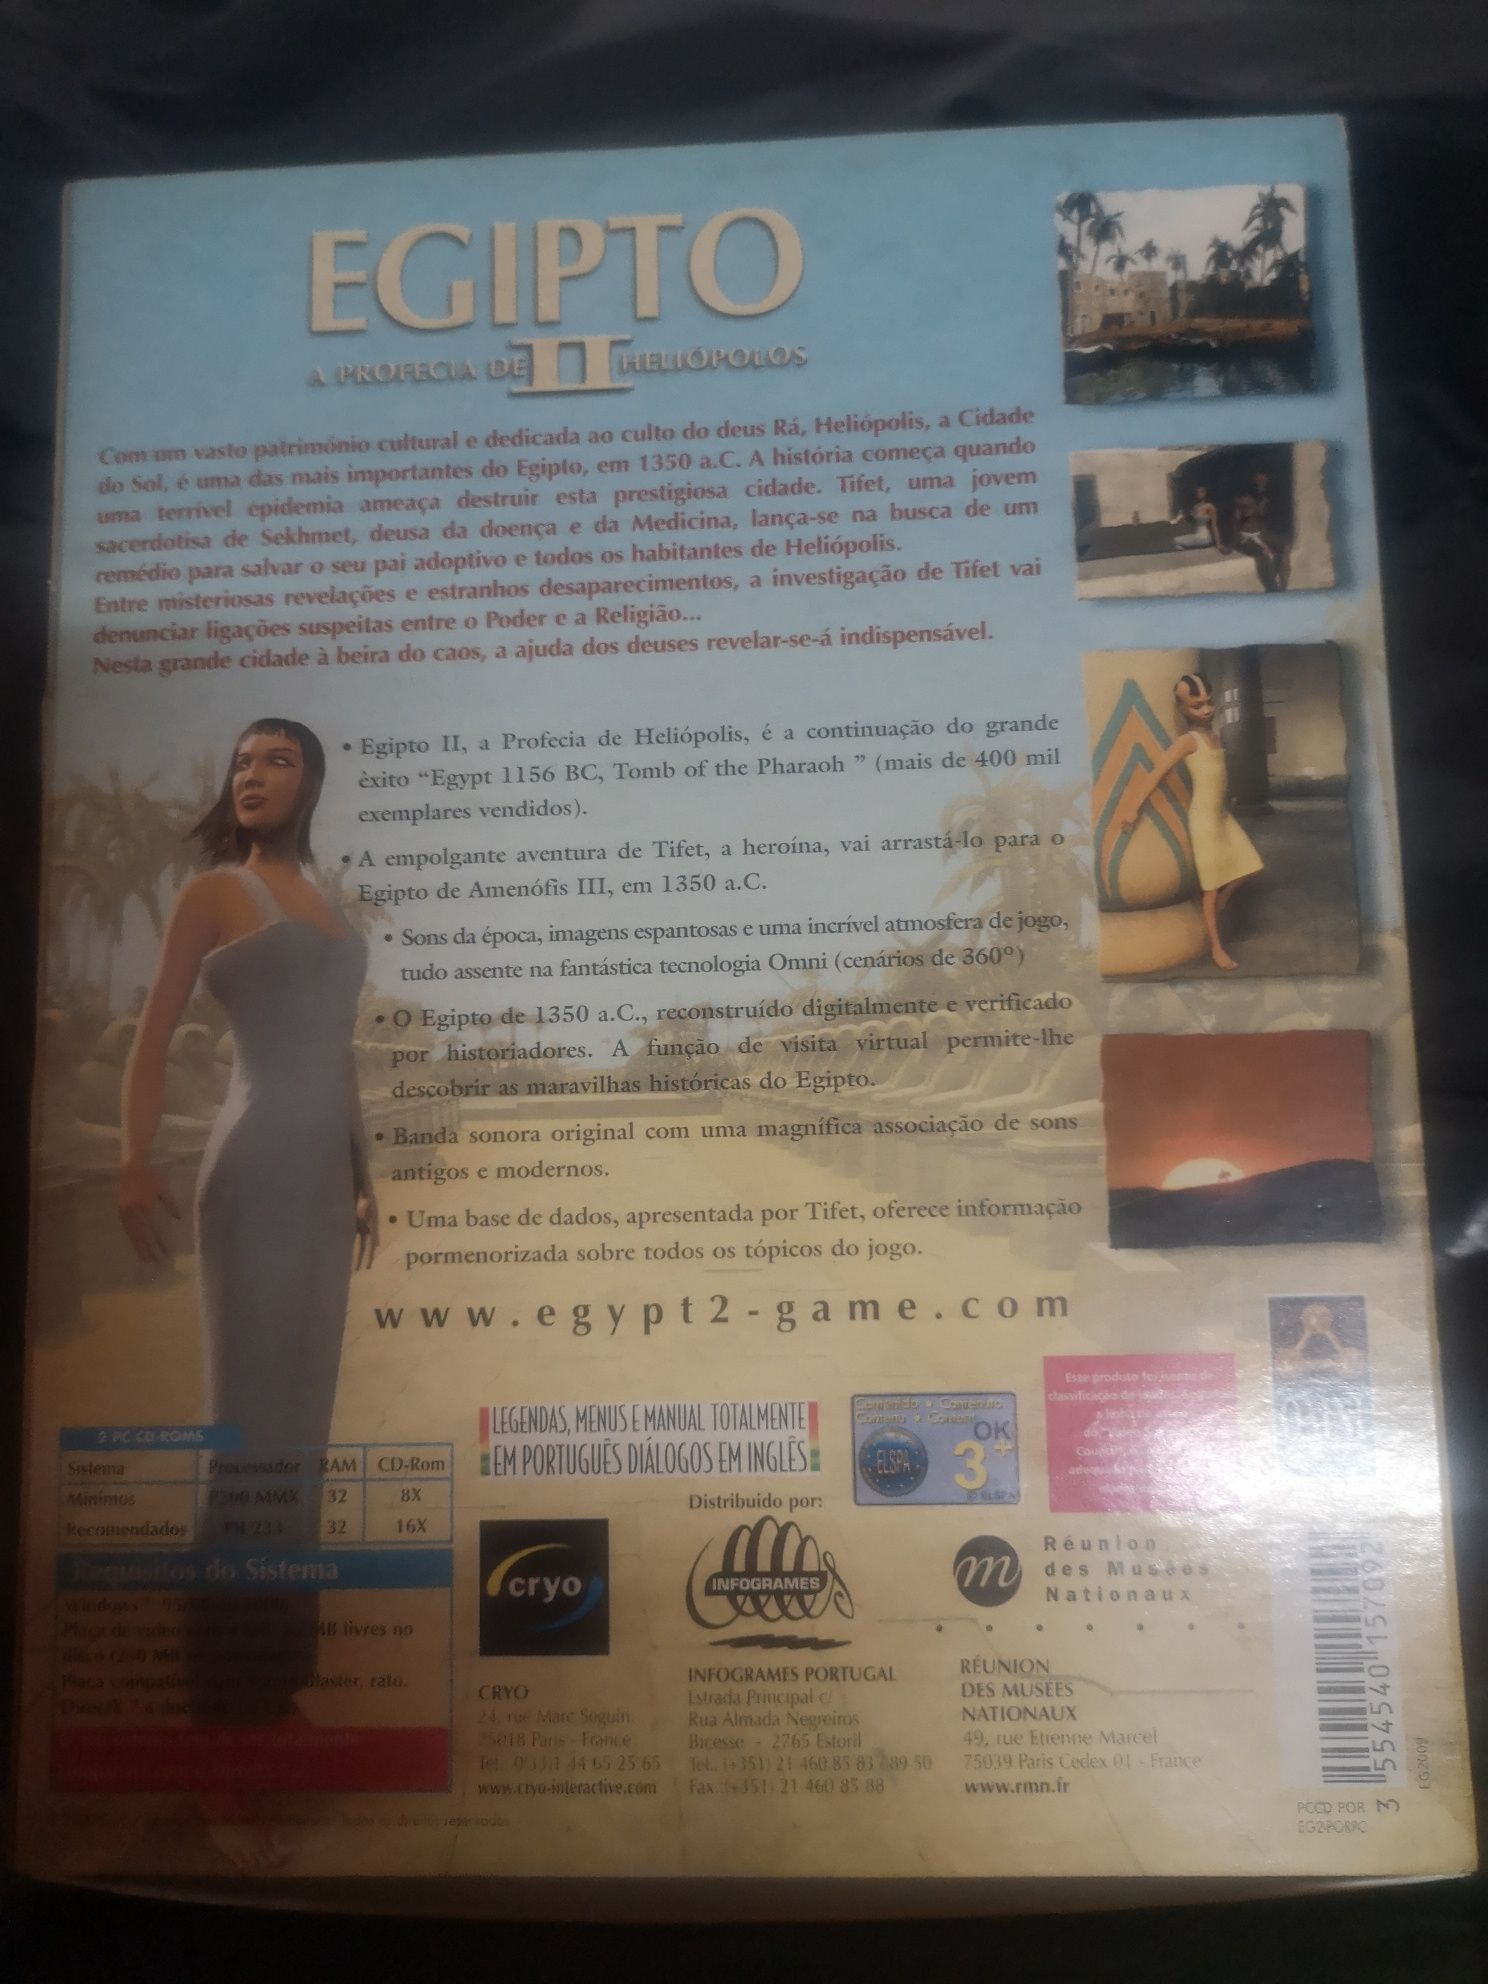 Egipto II - A profecia de Heliopolos (Bigbox)